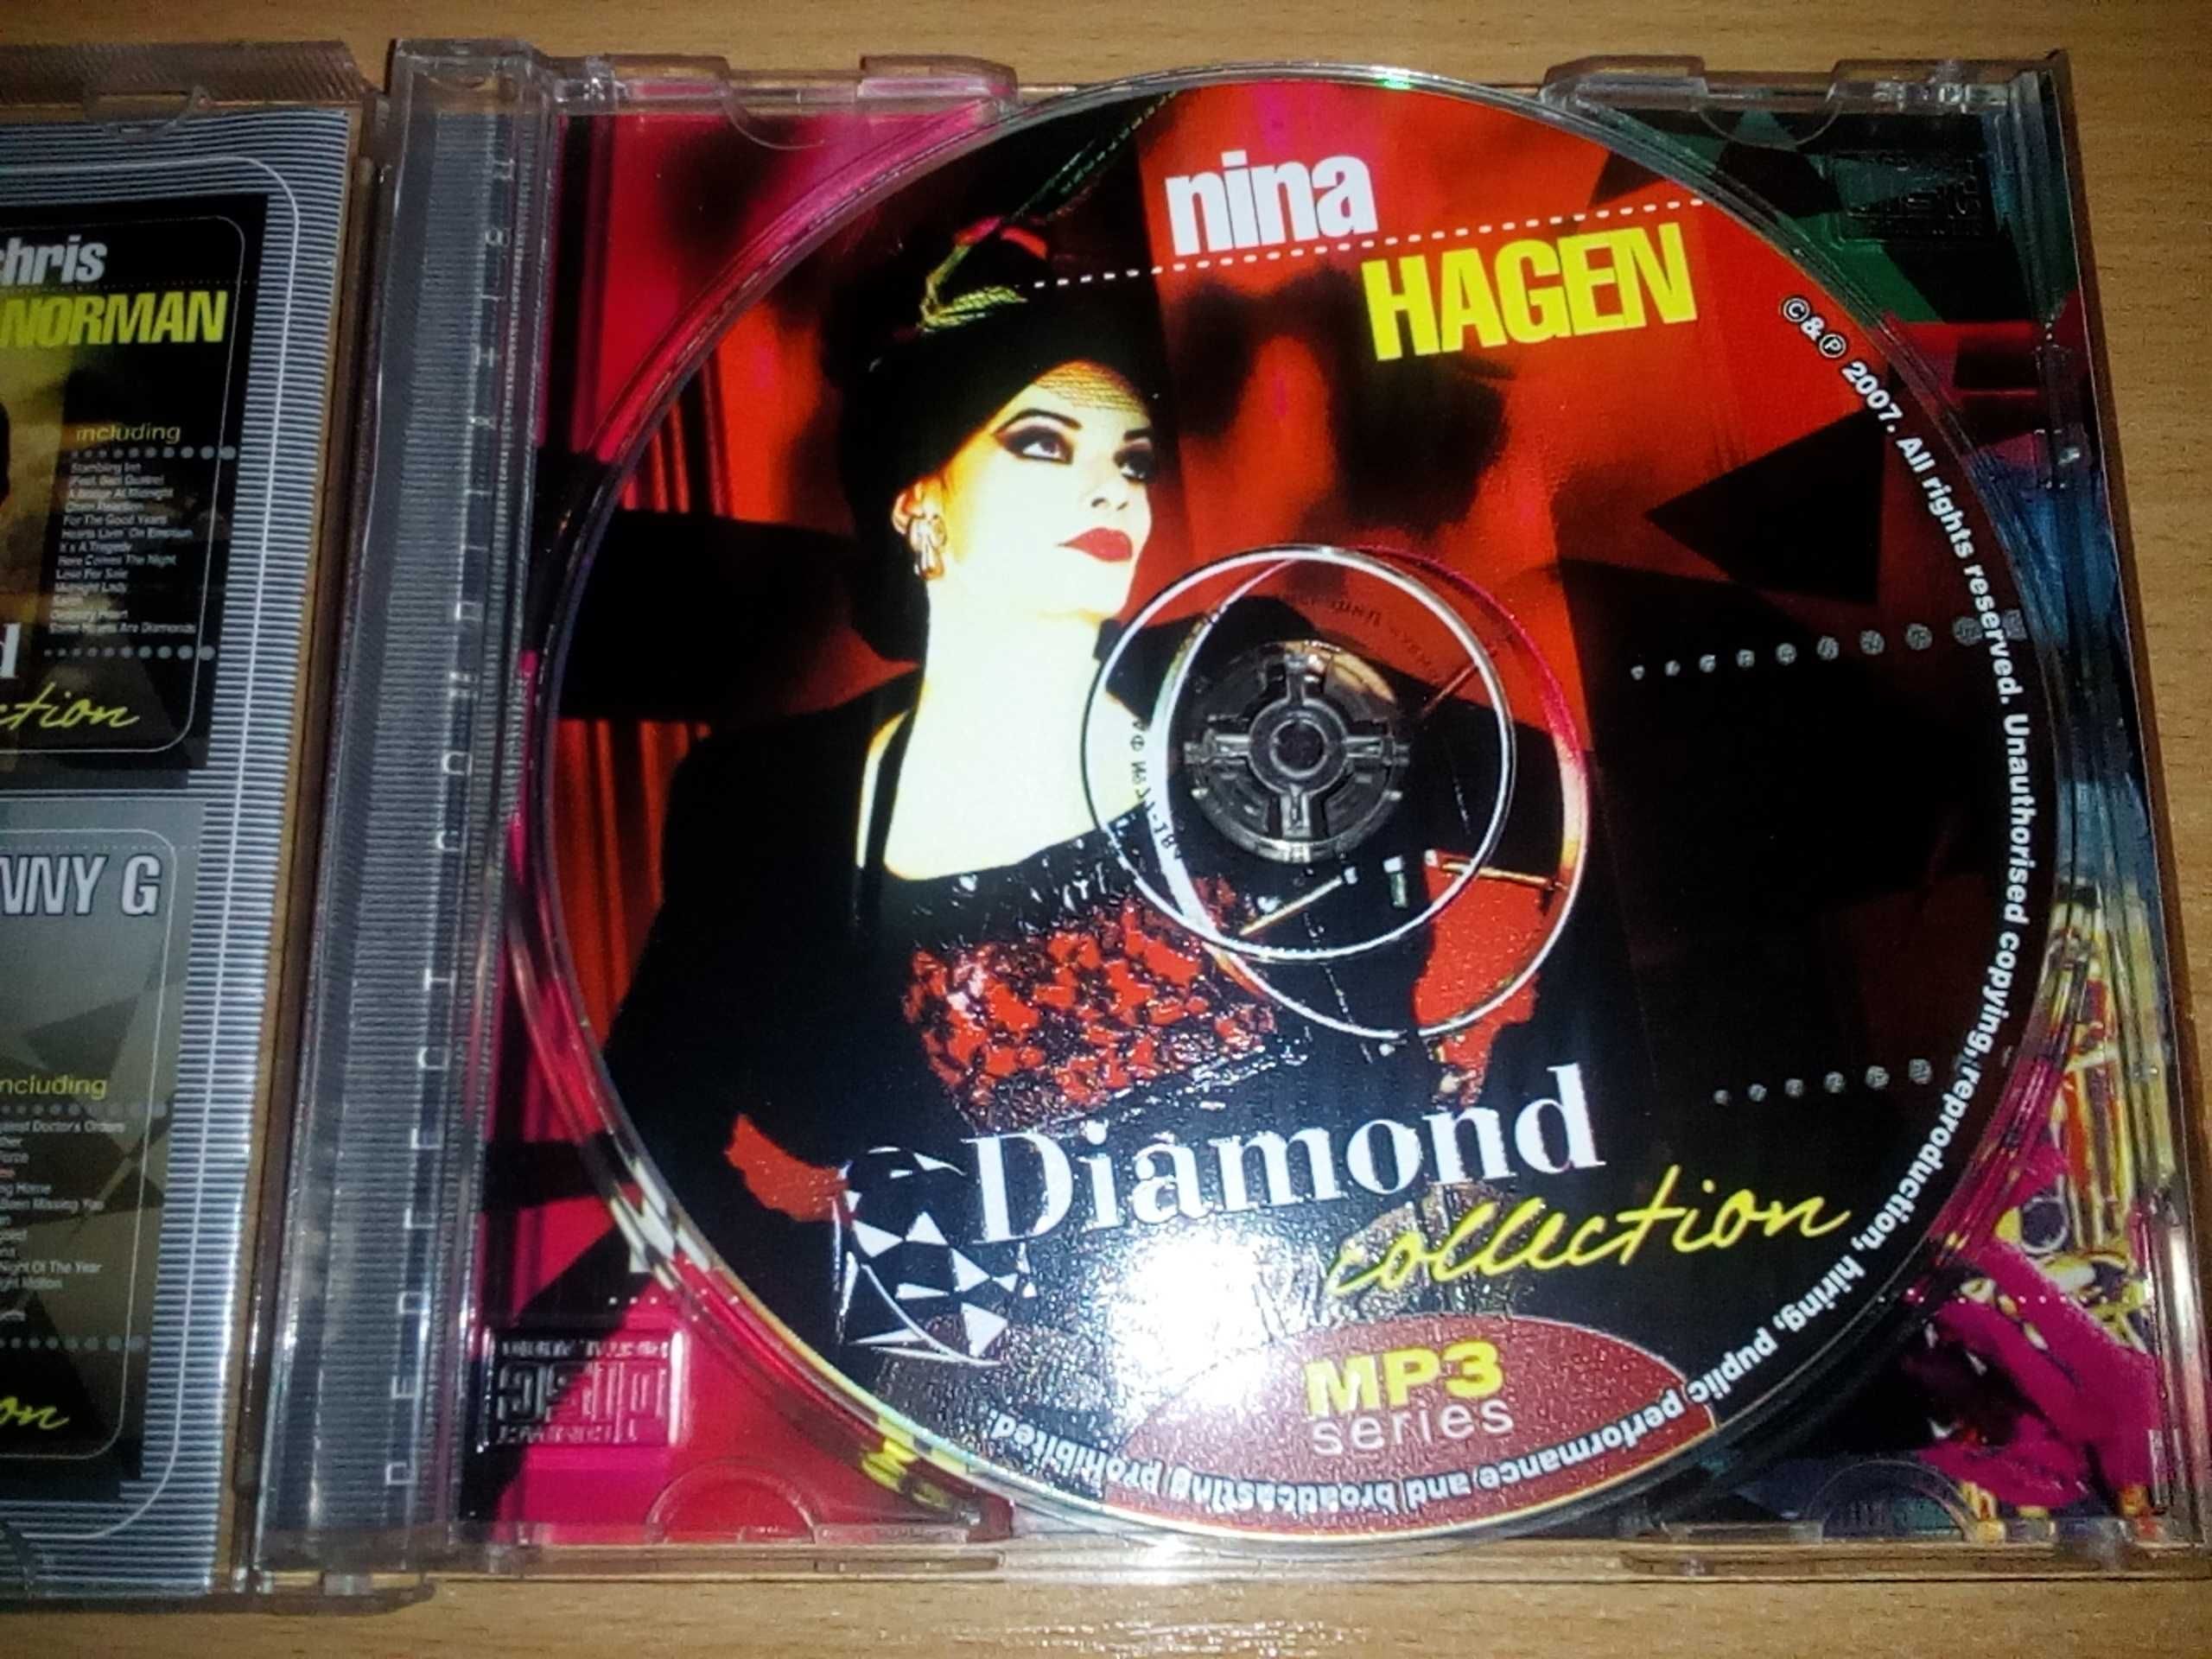 Nina Hagen - Diamond collection